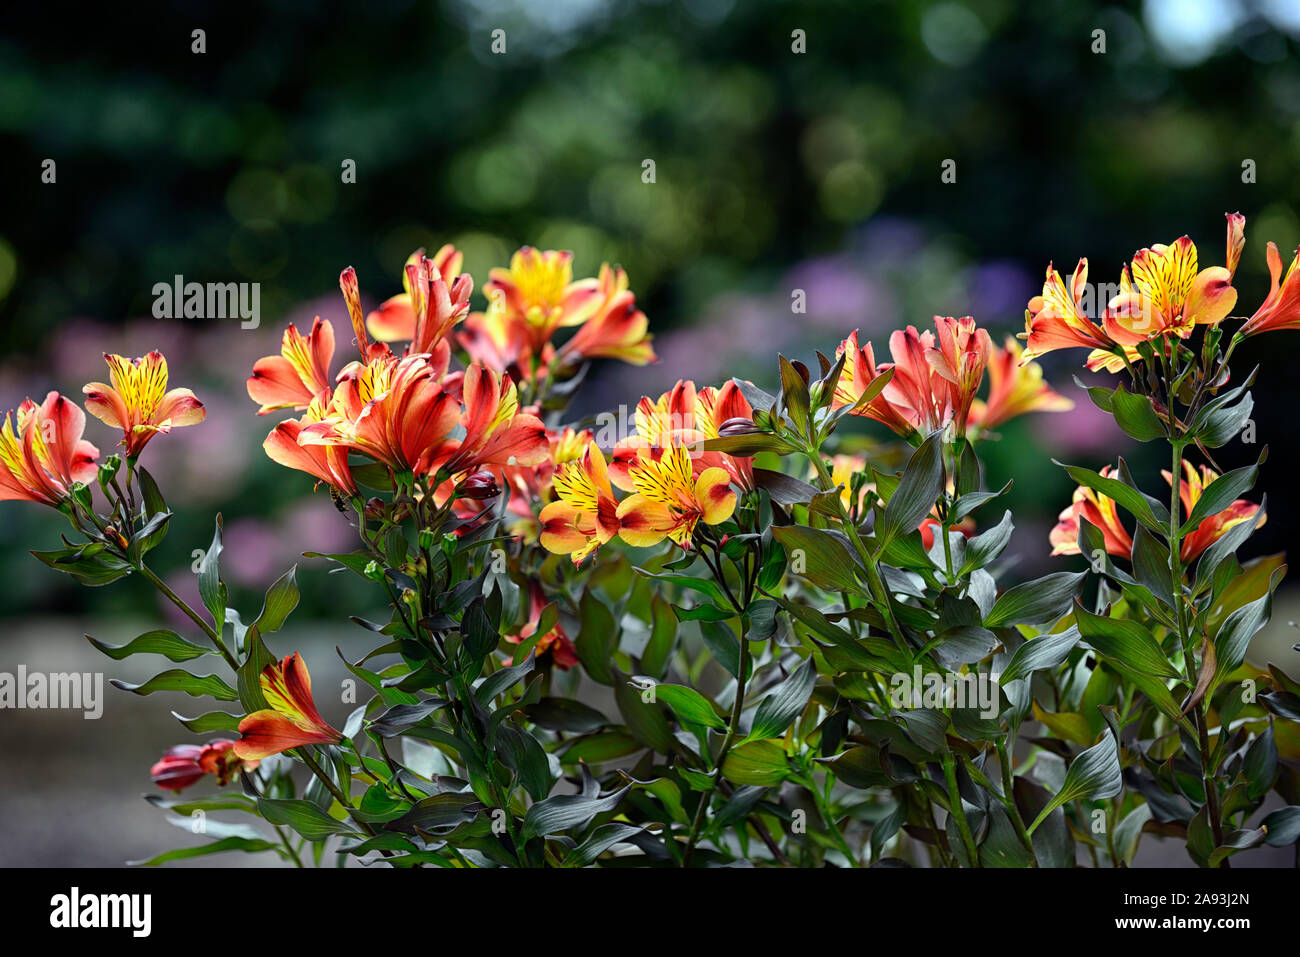 Alstroemeria Estate Indiana,giglio peruviano,il rame,arancione,giallo,fiore,fiori,fioritura,perenne,fiori recisi,RM Floral Foto Stock